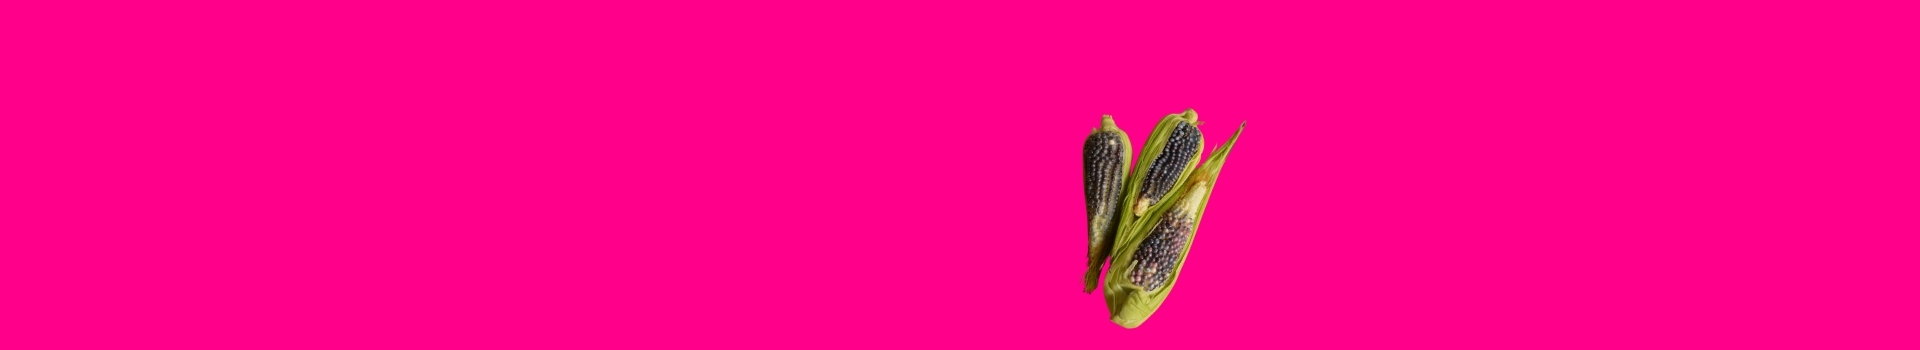 Imagen de fondo rosa mexicano con mazorcas de maíz azul